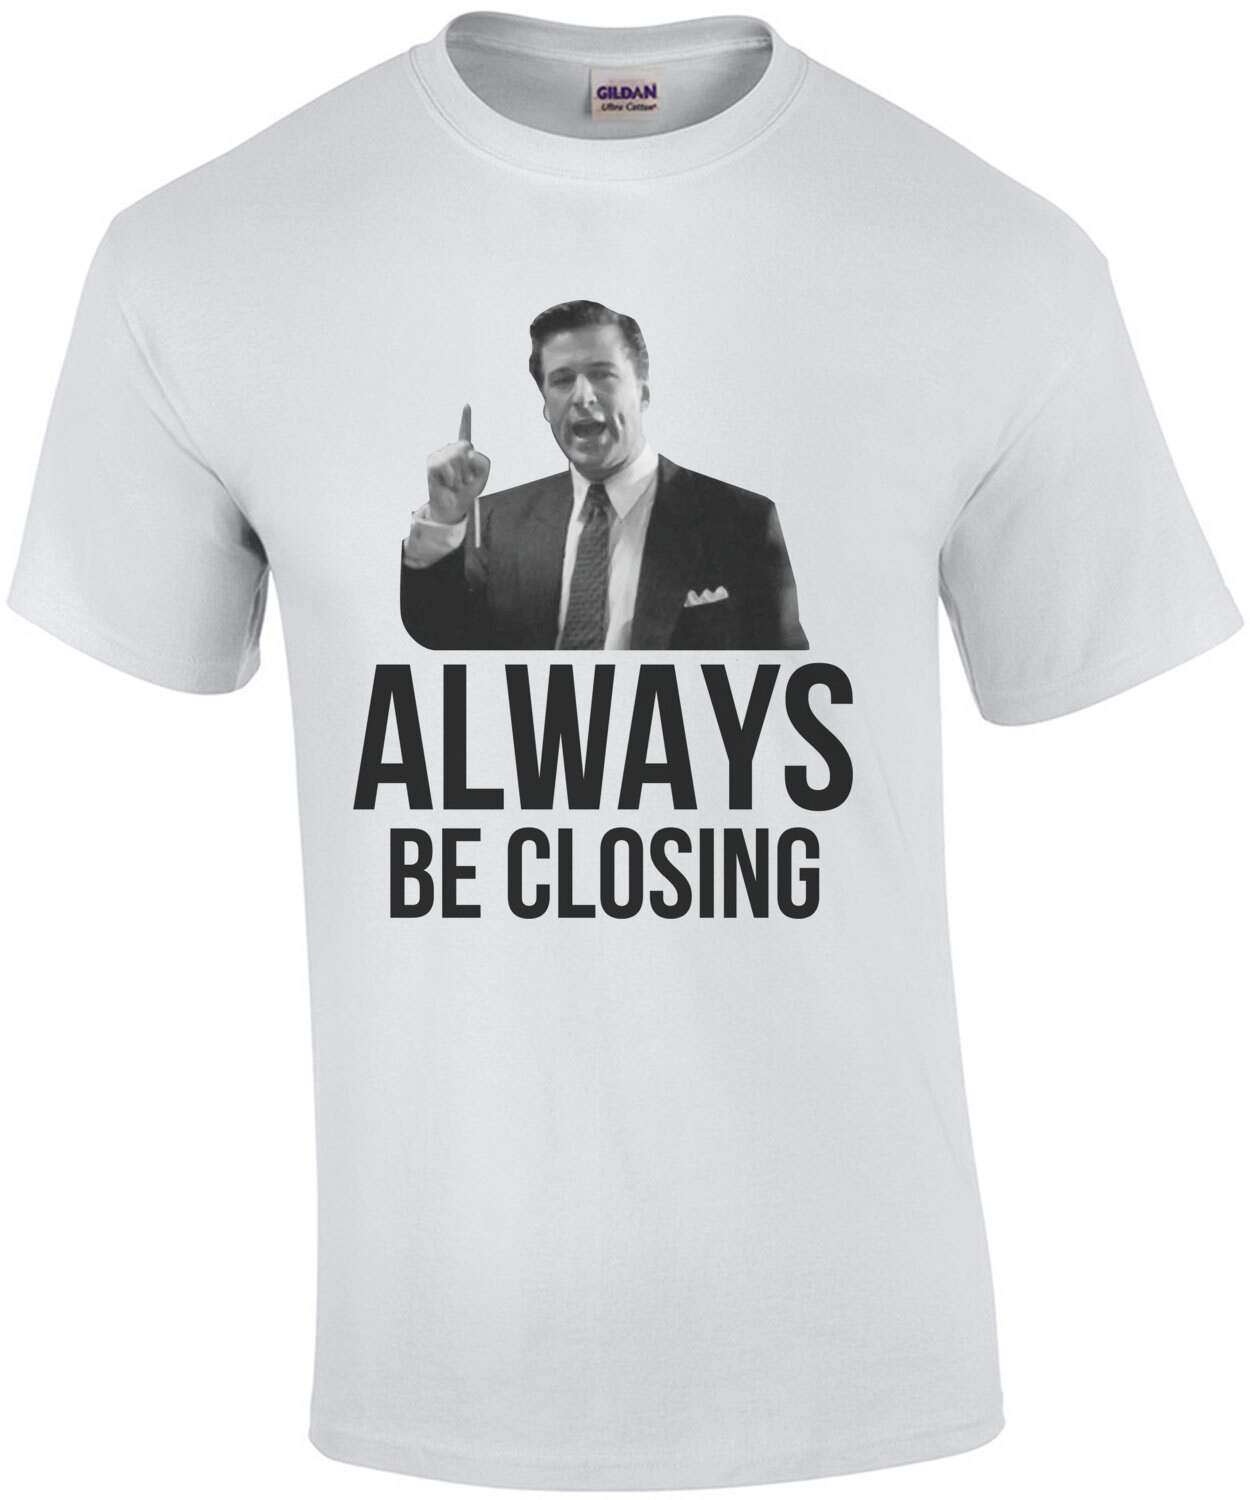 Always be closing - Glengarry Glen Ross - 90's T-Shirt